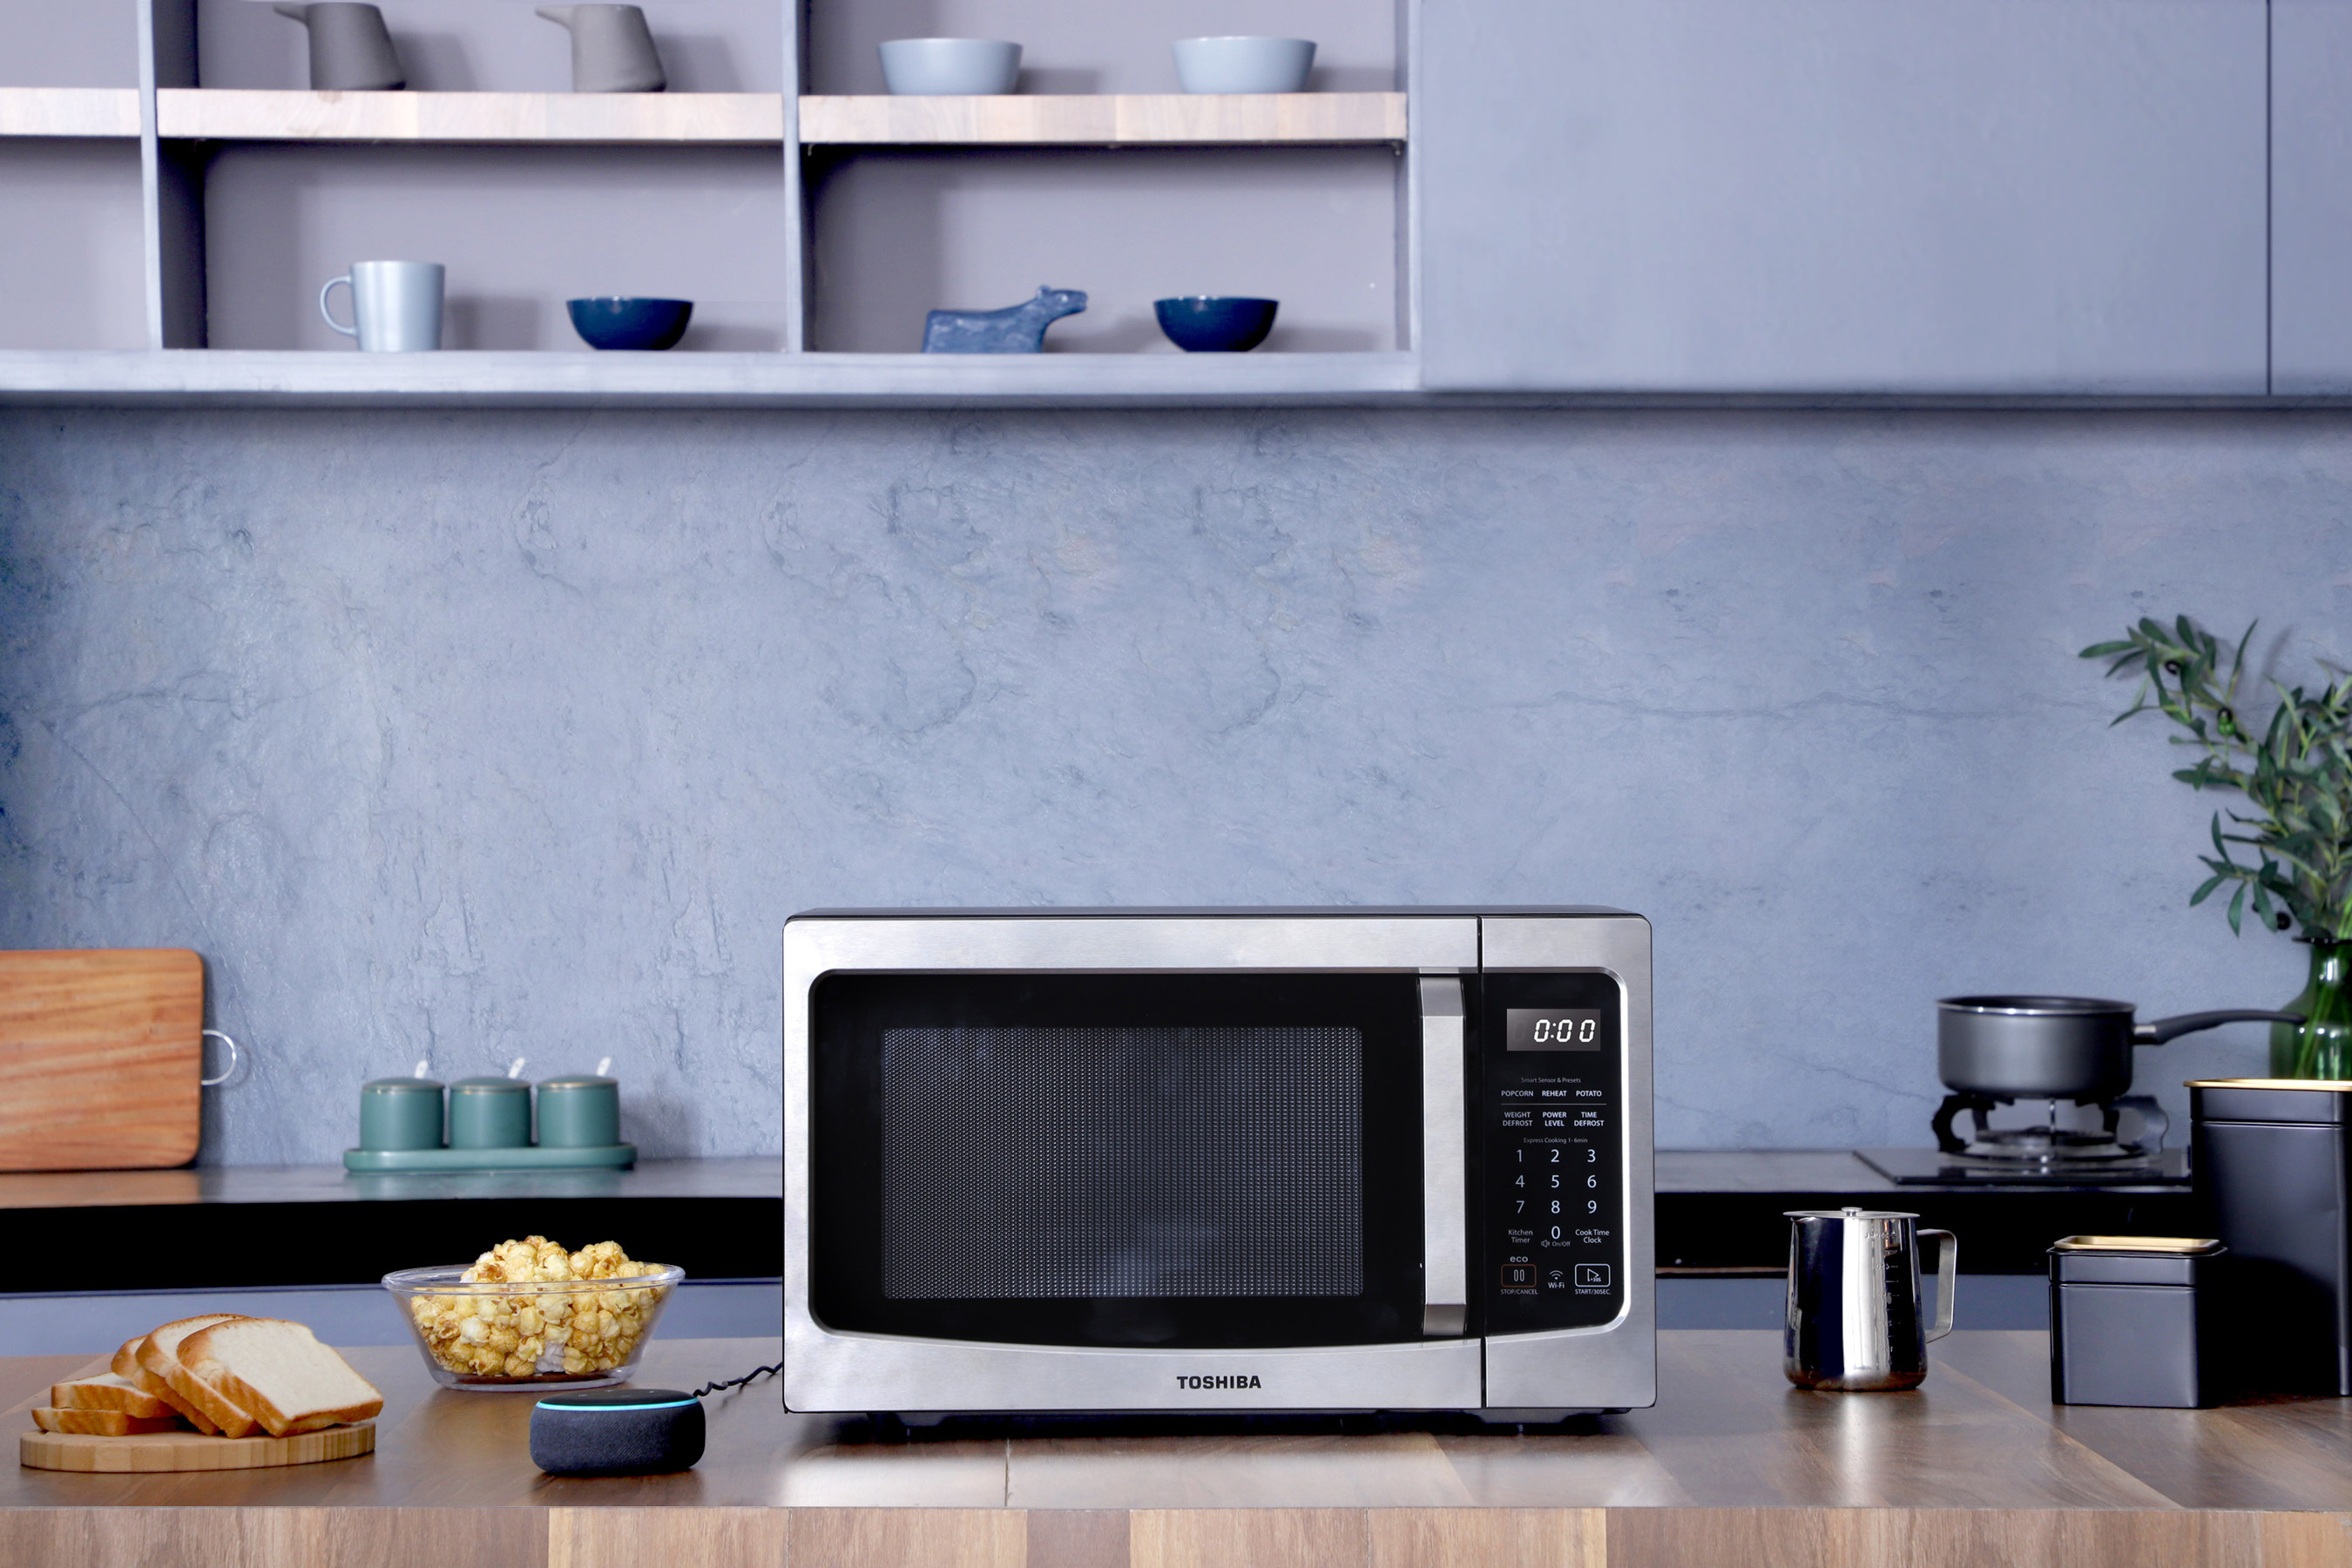 Моды на свч. Микроволновая печь Microwave Oven. Microwave Oven Interior LG. Микроволновка Тошиба. Samsung Microwave Oven с вытяжкой.